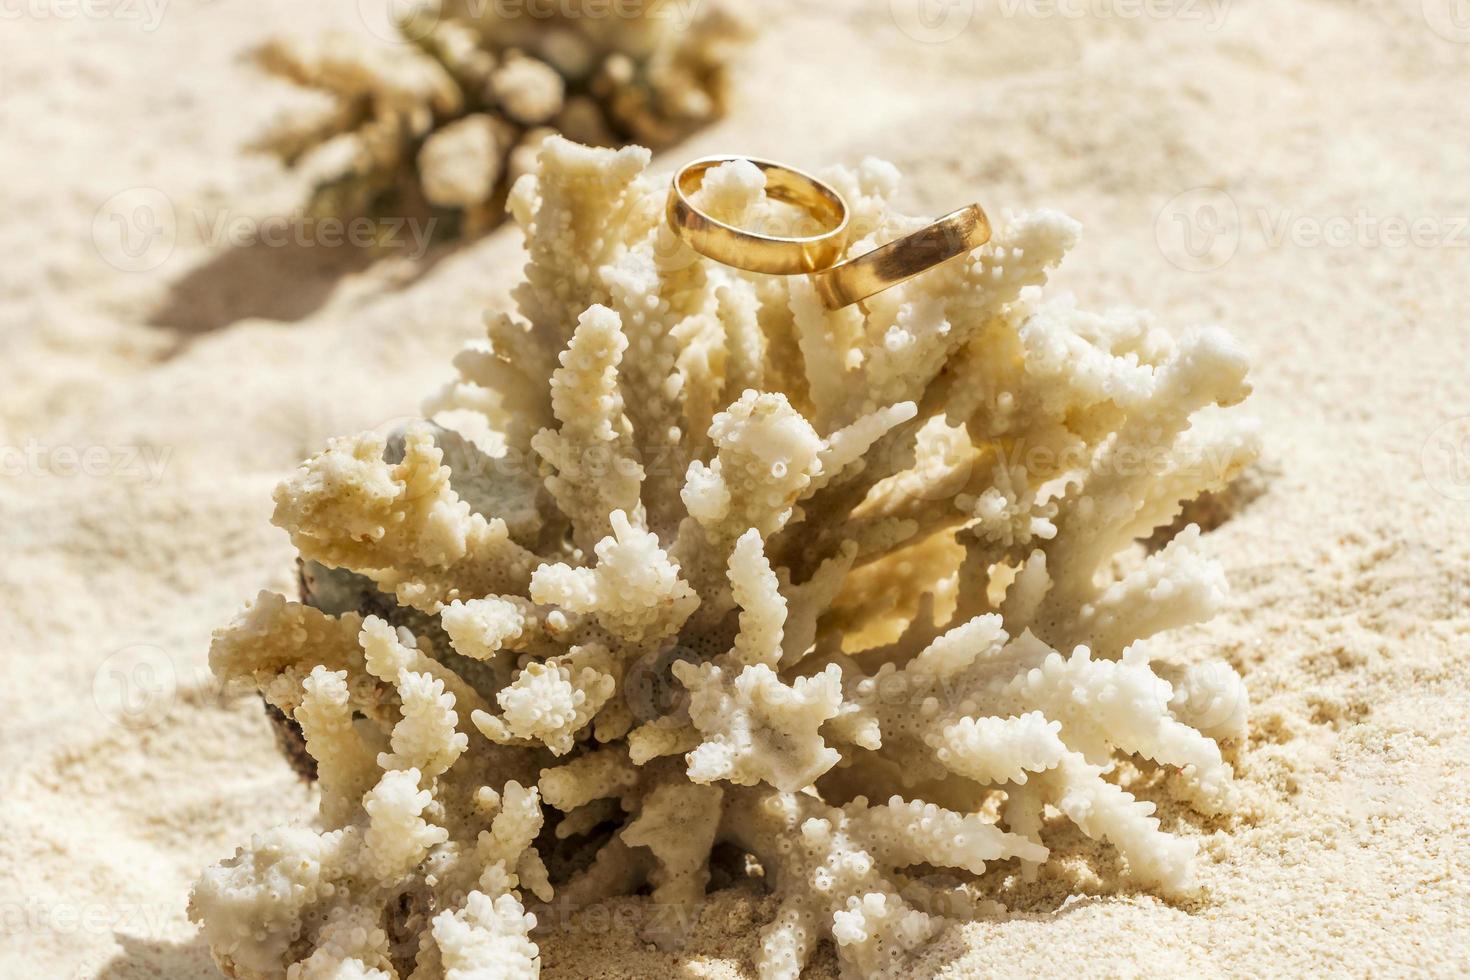 trouwringen op koraal op het strand. huwelijksreis in thailand. foto